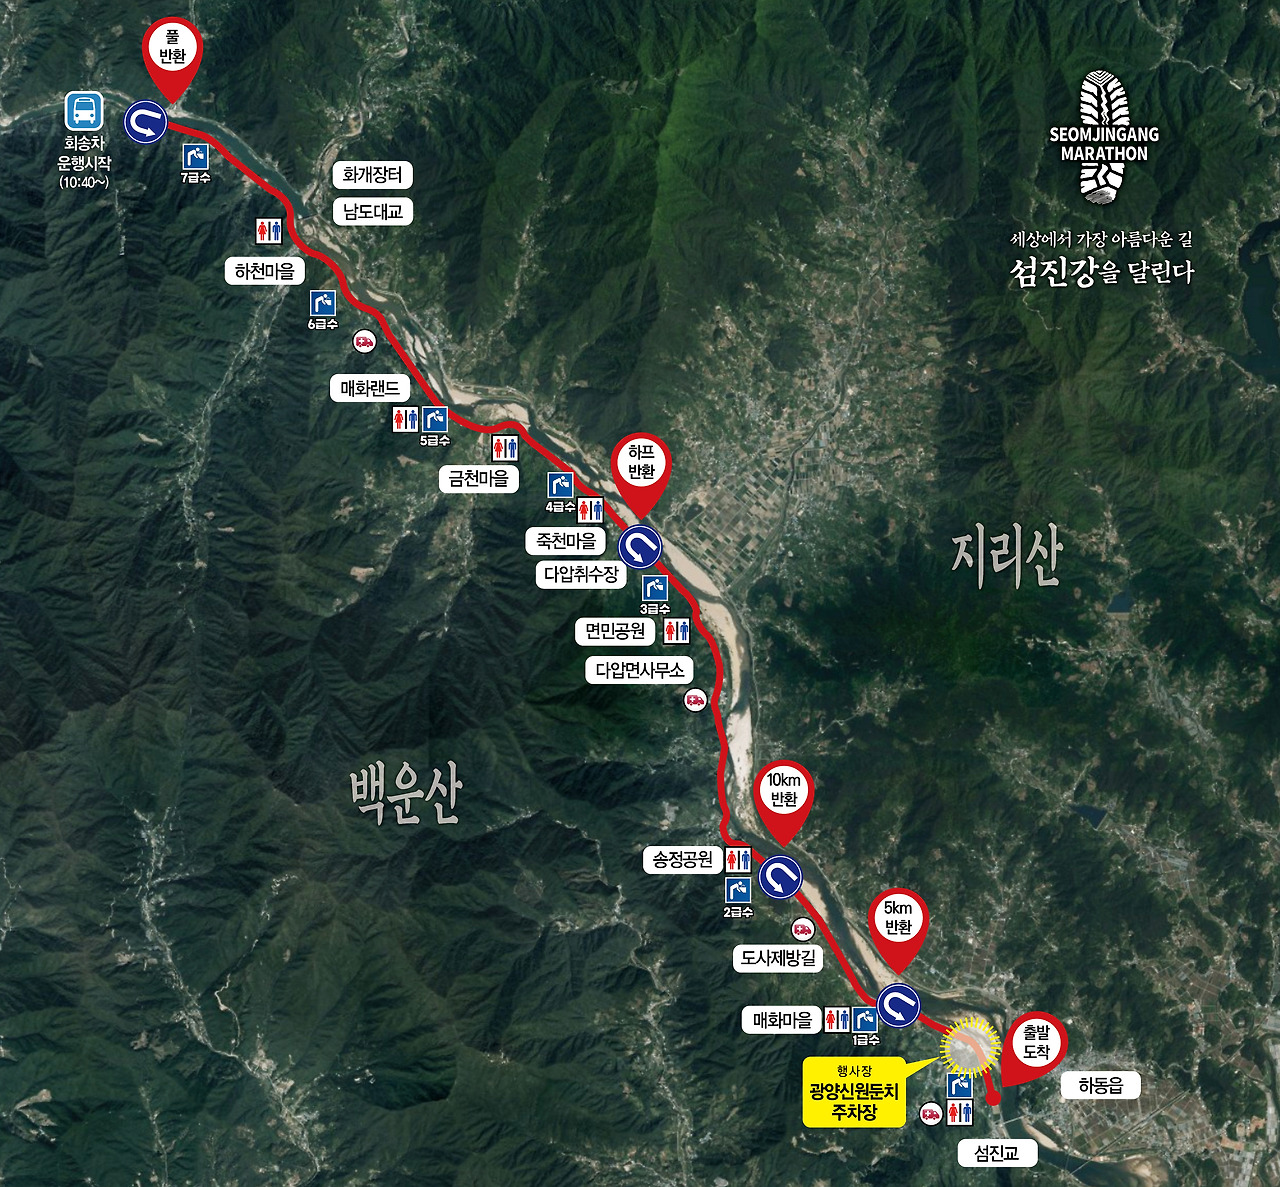 제13회 MBC 섬진강 꽃길 마라톤 대회 전체 코스 지도